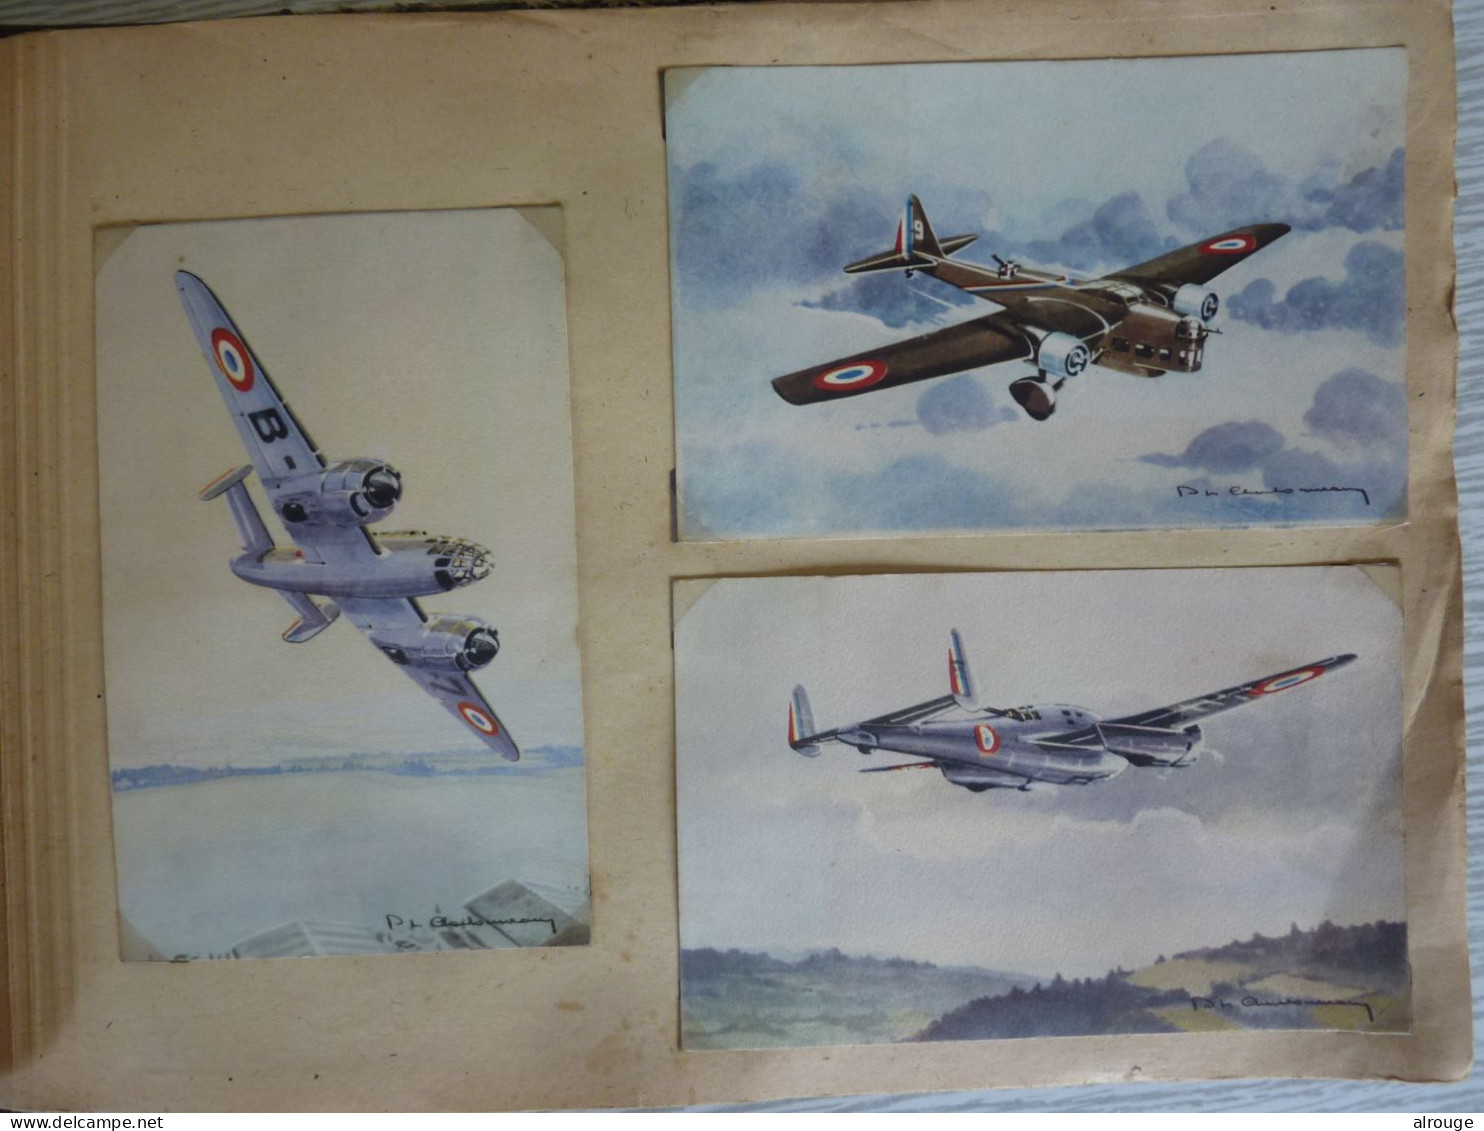 Album de CP d'Avions de guerre 1939-1945 , 65 Cartes postales